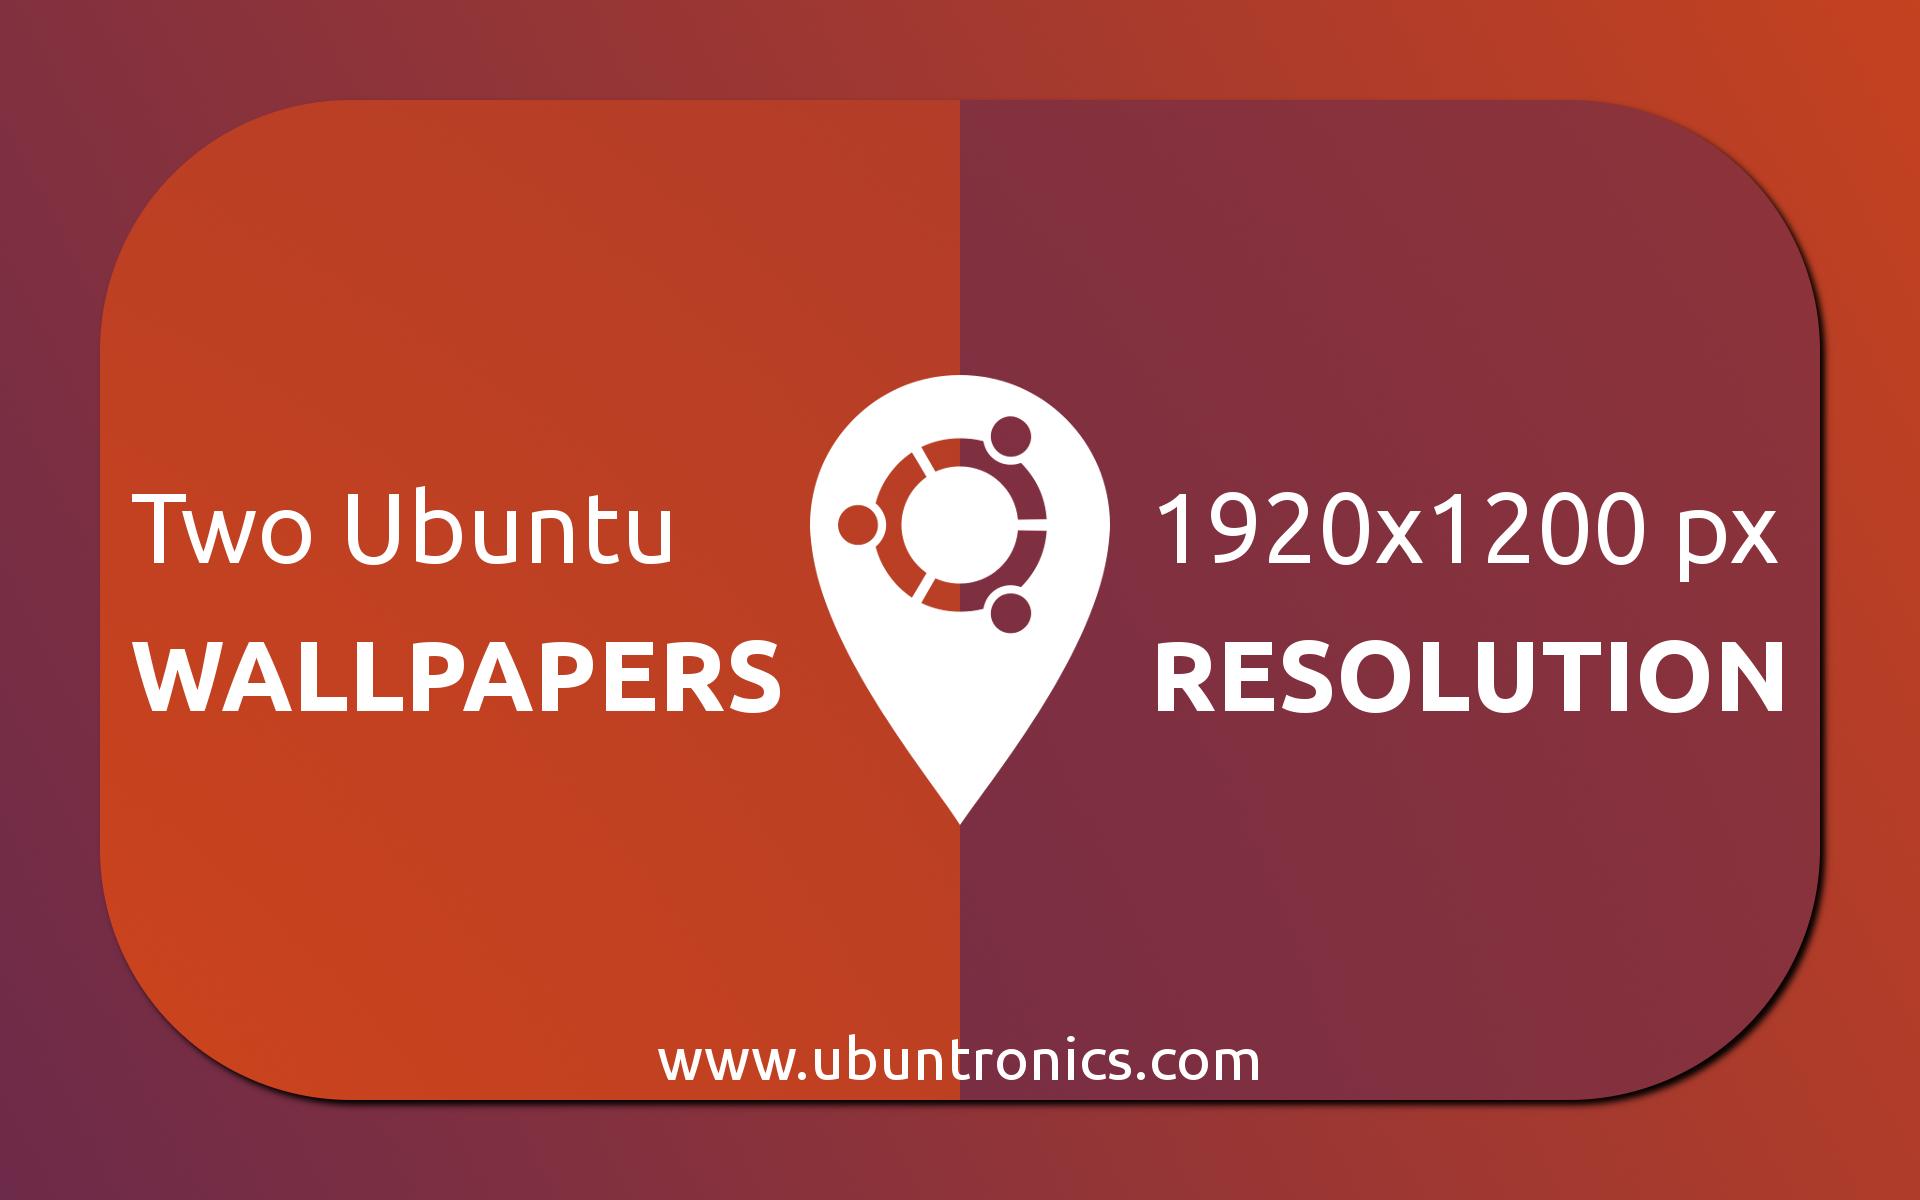 Ubuntronics: Two Ubuntu Wallpaper